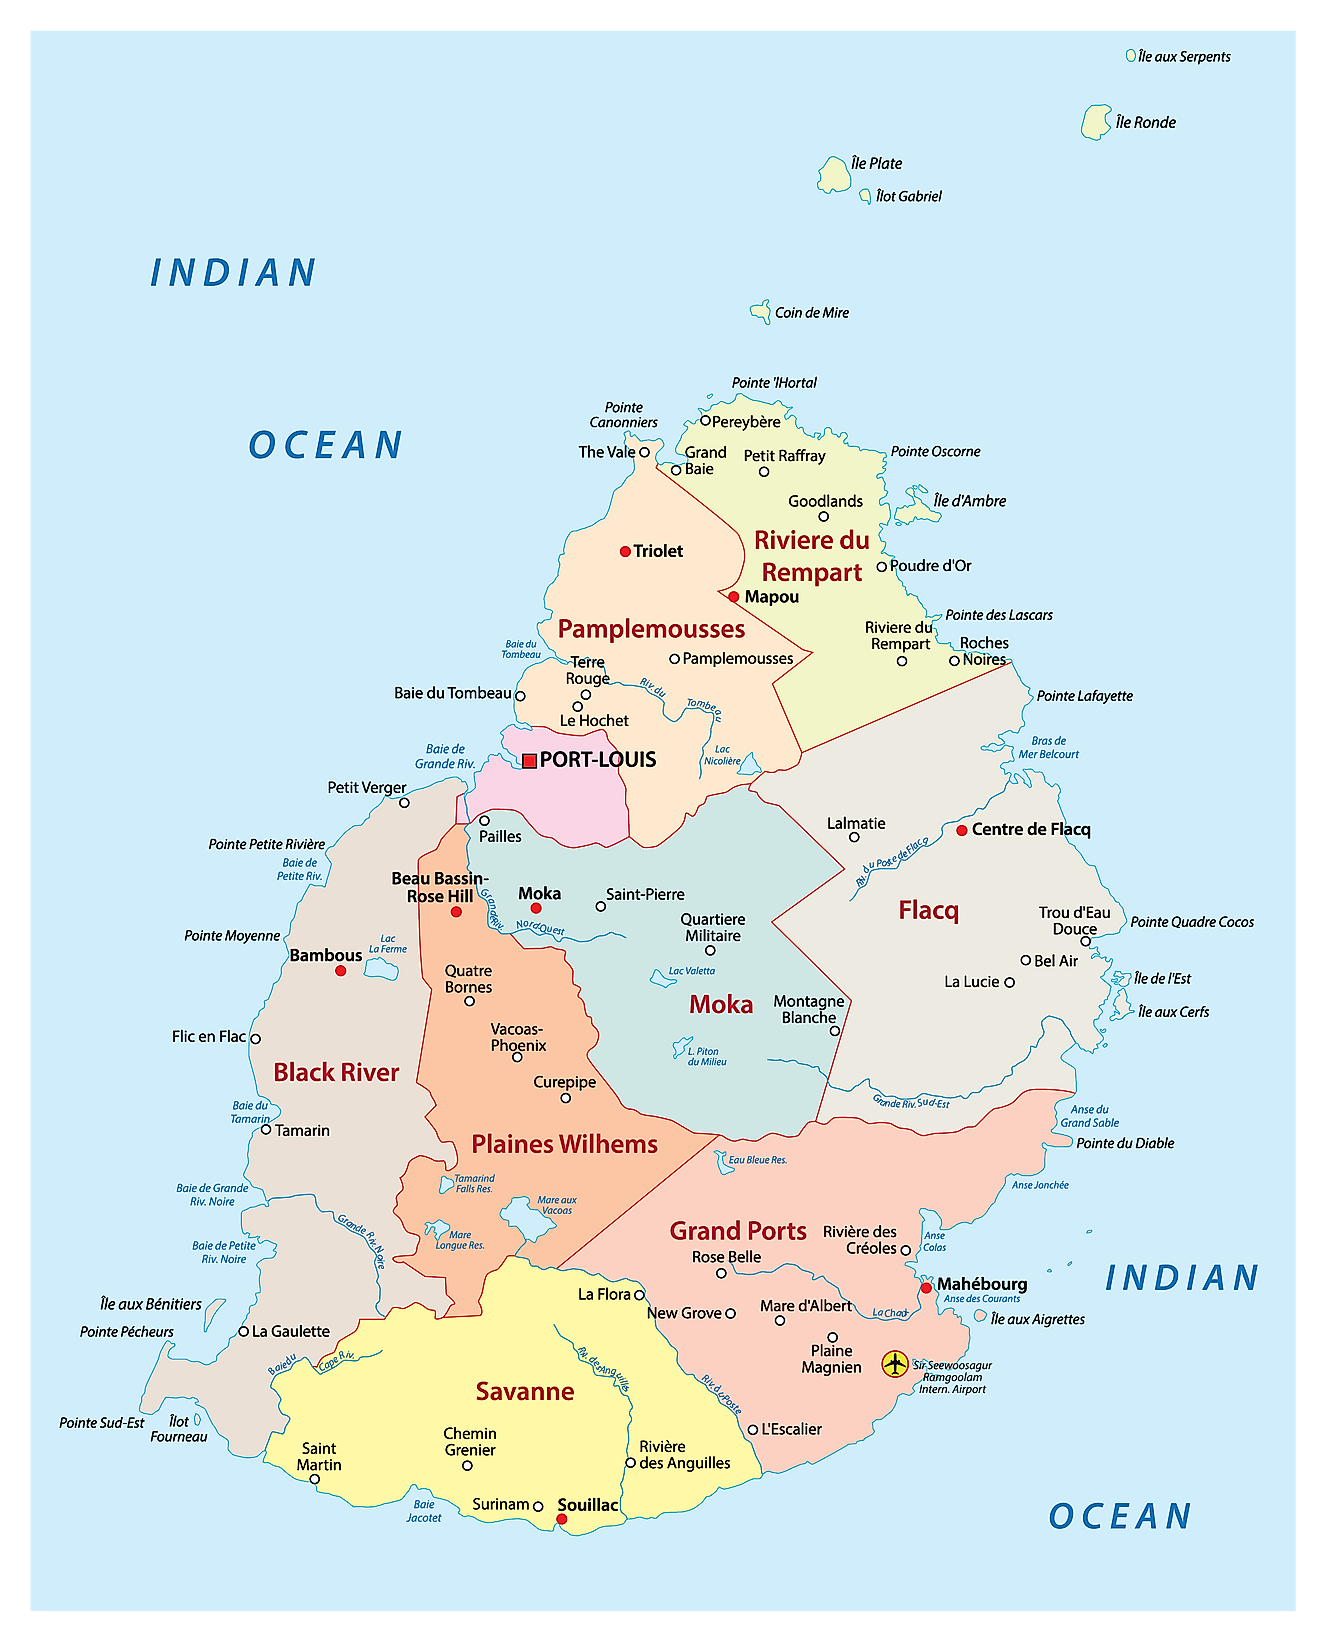 El Mapa Político de Mauricio que muestra los nueve distritos del país, sus capitales y la capital nacional de Port Louis.